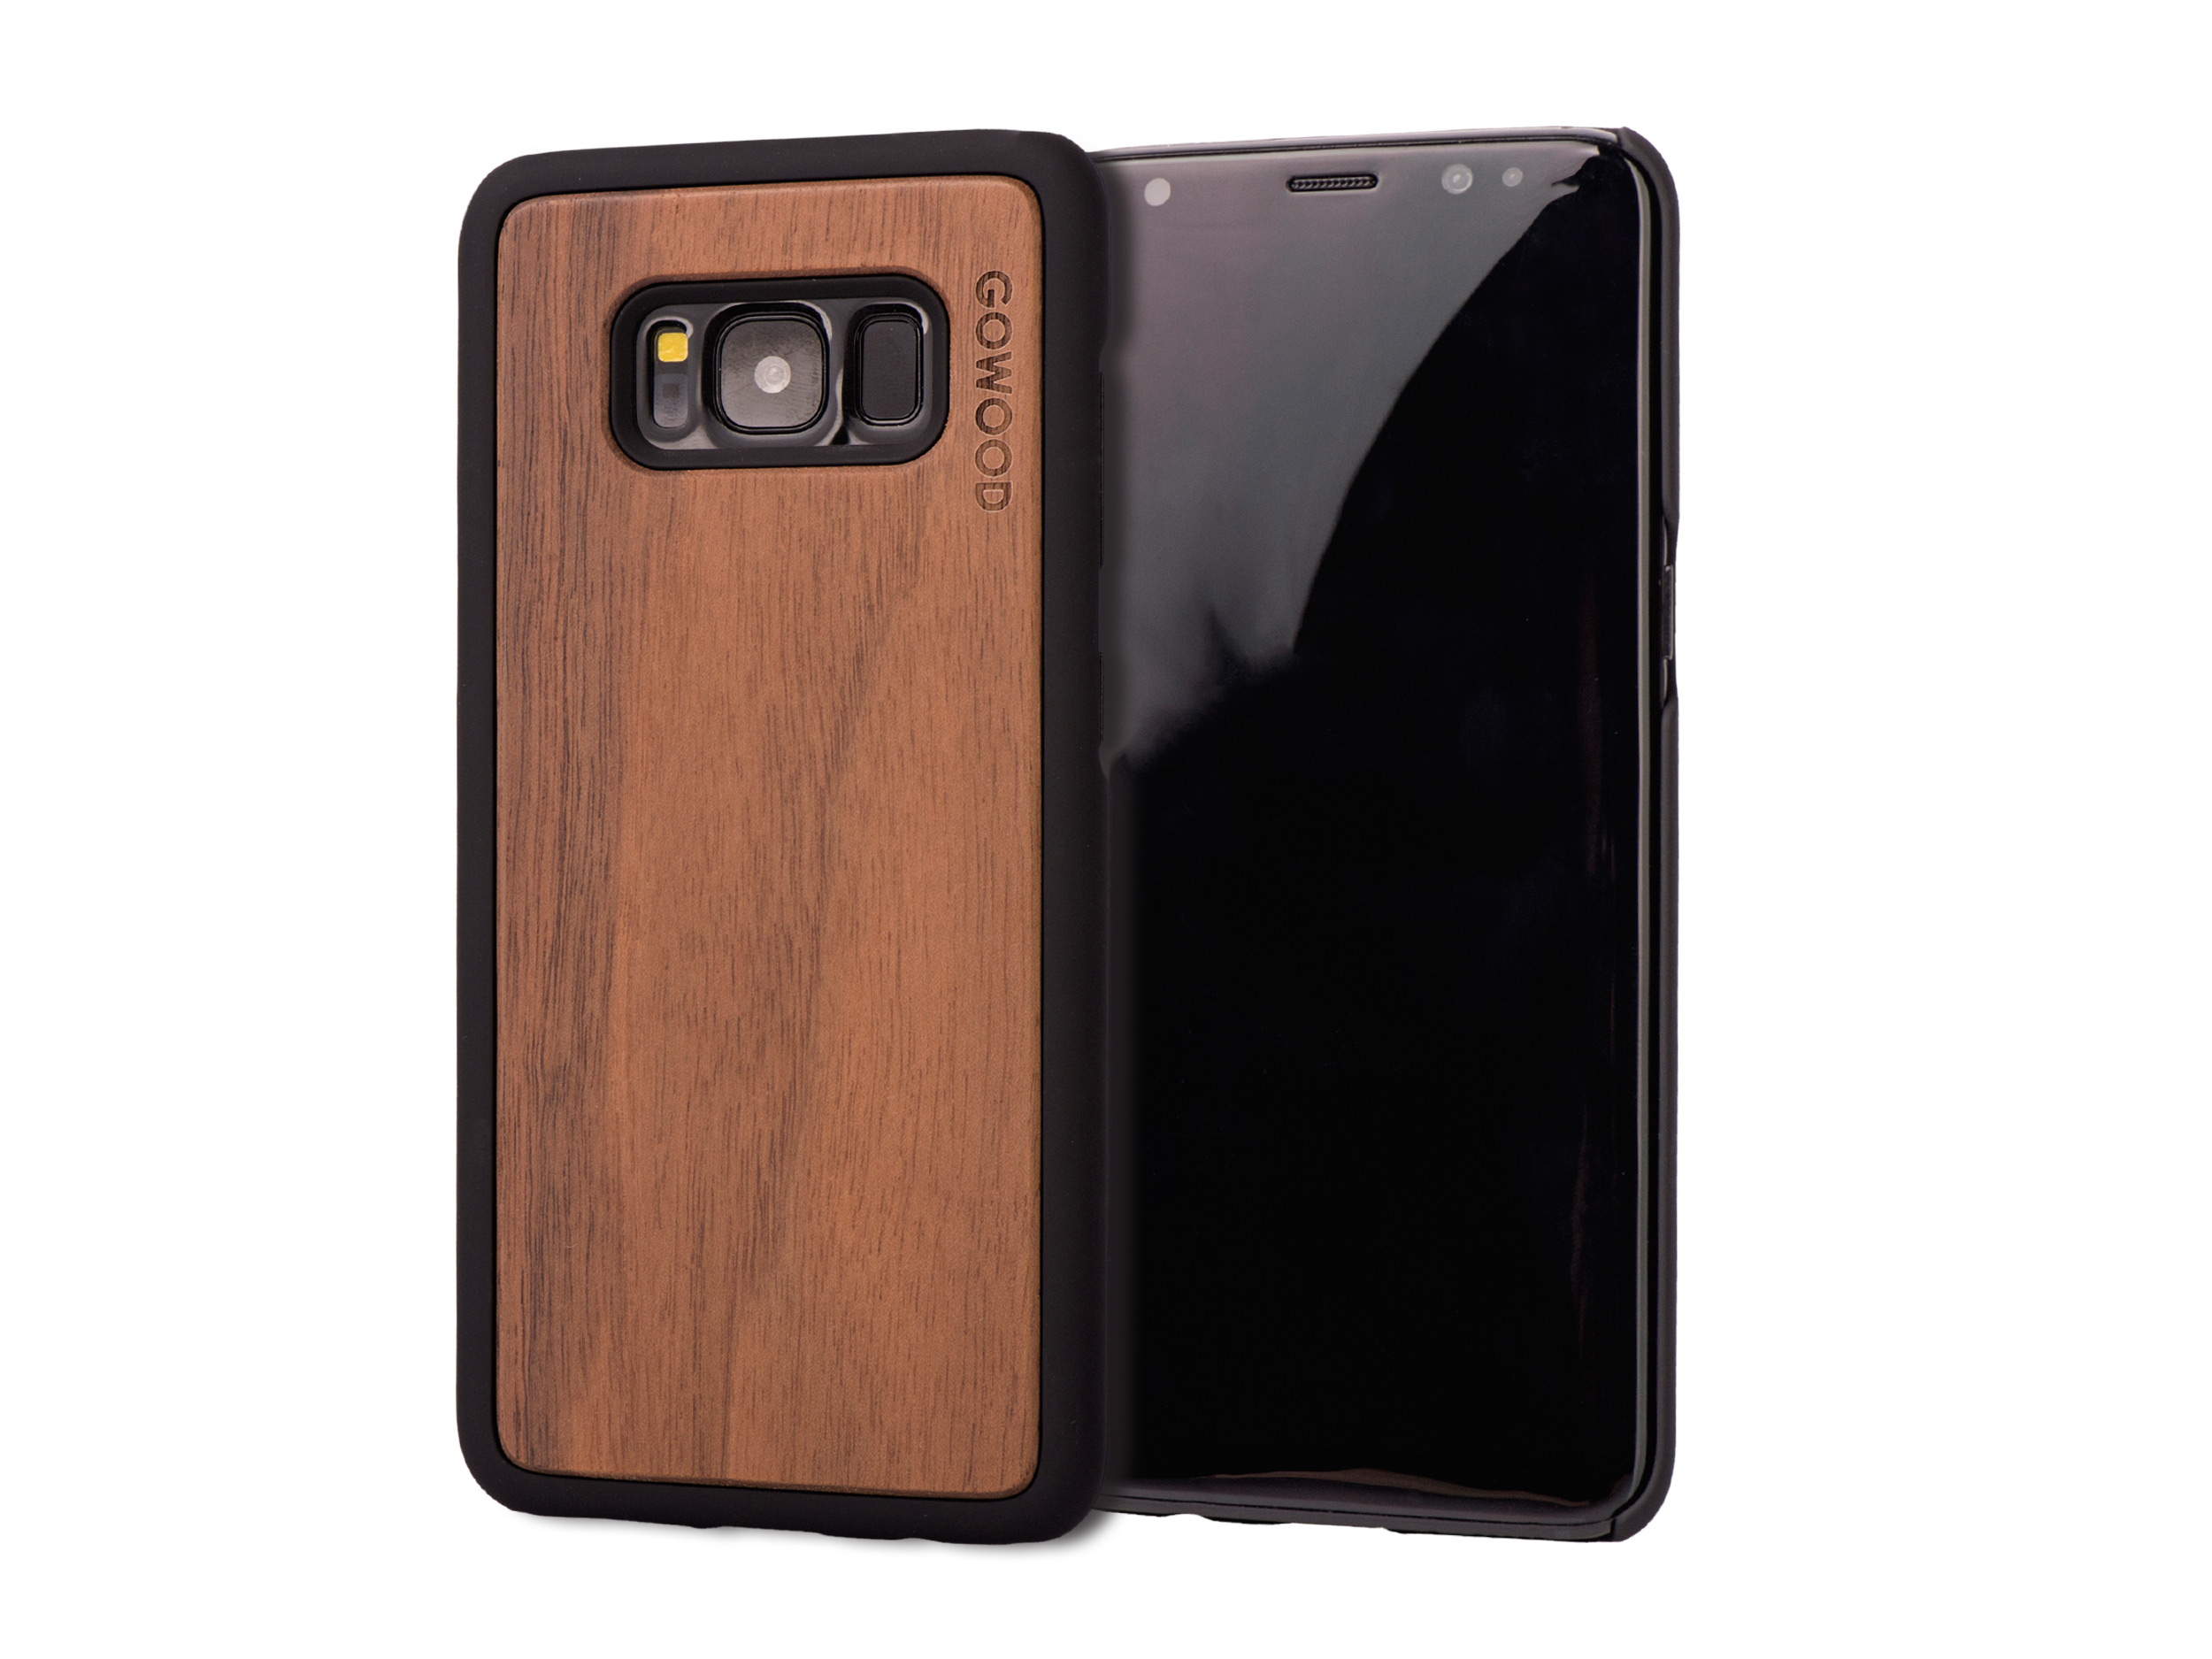 Samsung Galaxy S8 wood case walnut